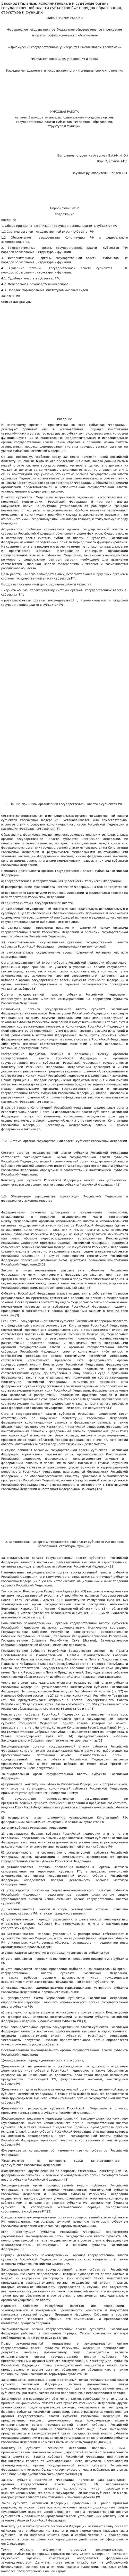 Законодательные, исполнительные и судебные органы государственной власти субъектов РФ: порядок образования, структура и функции